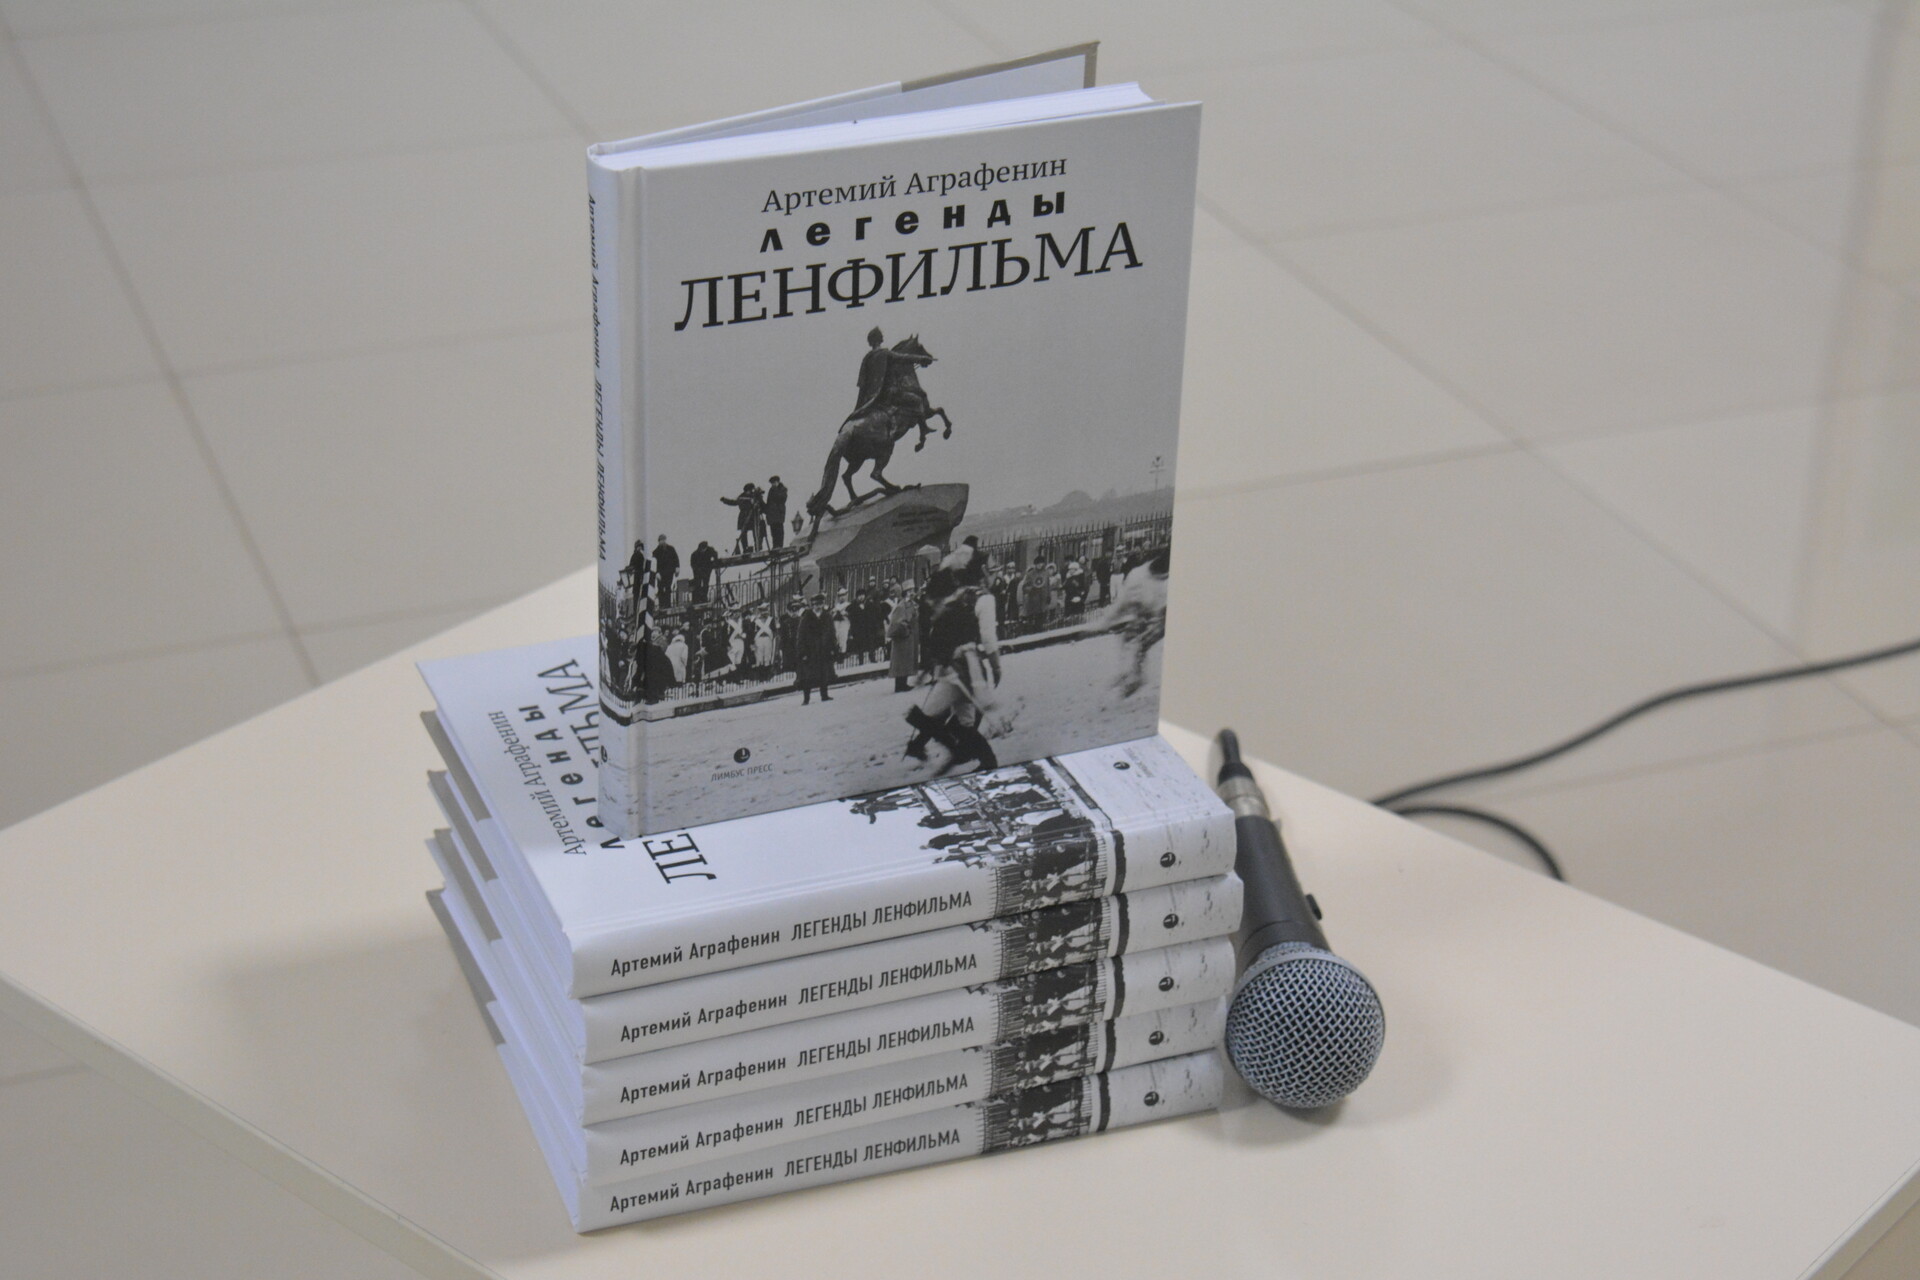 ФОТОРЕПОРТАЖ. Презентация книги «Легенды Ленфильма» в Пскове